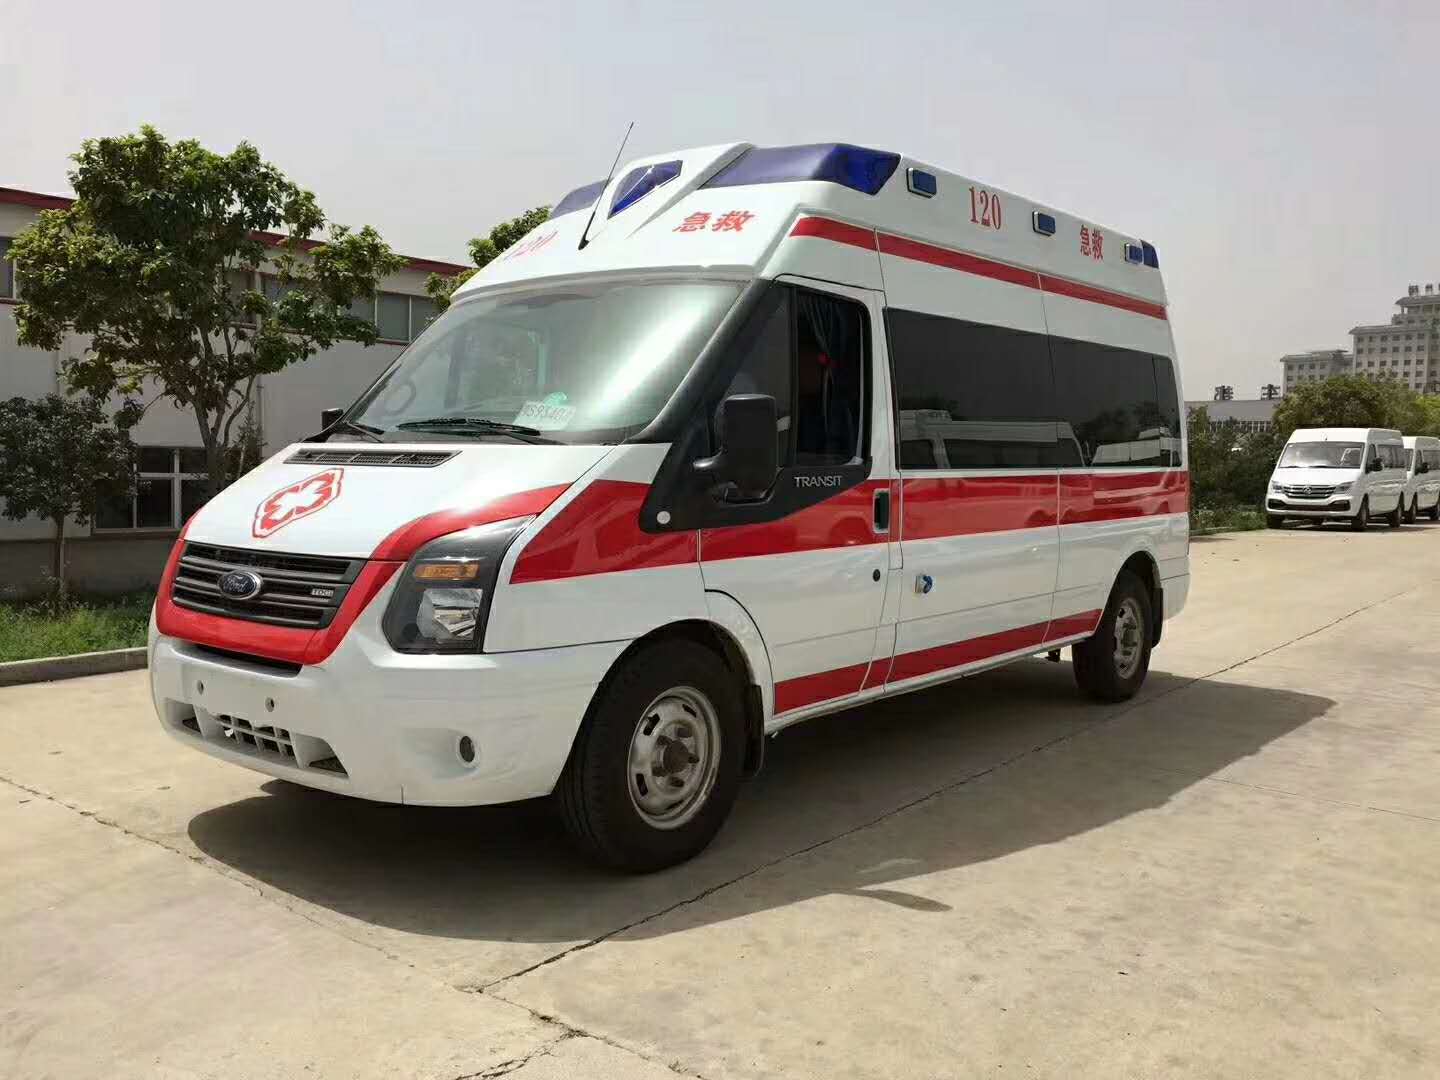 hospital ambulance vehicle Rescue monitoring ambulance vehicle for sale